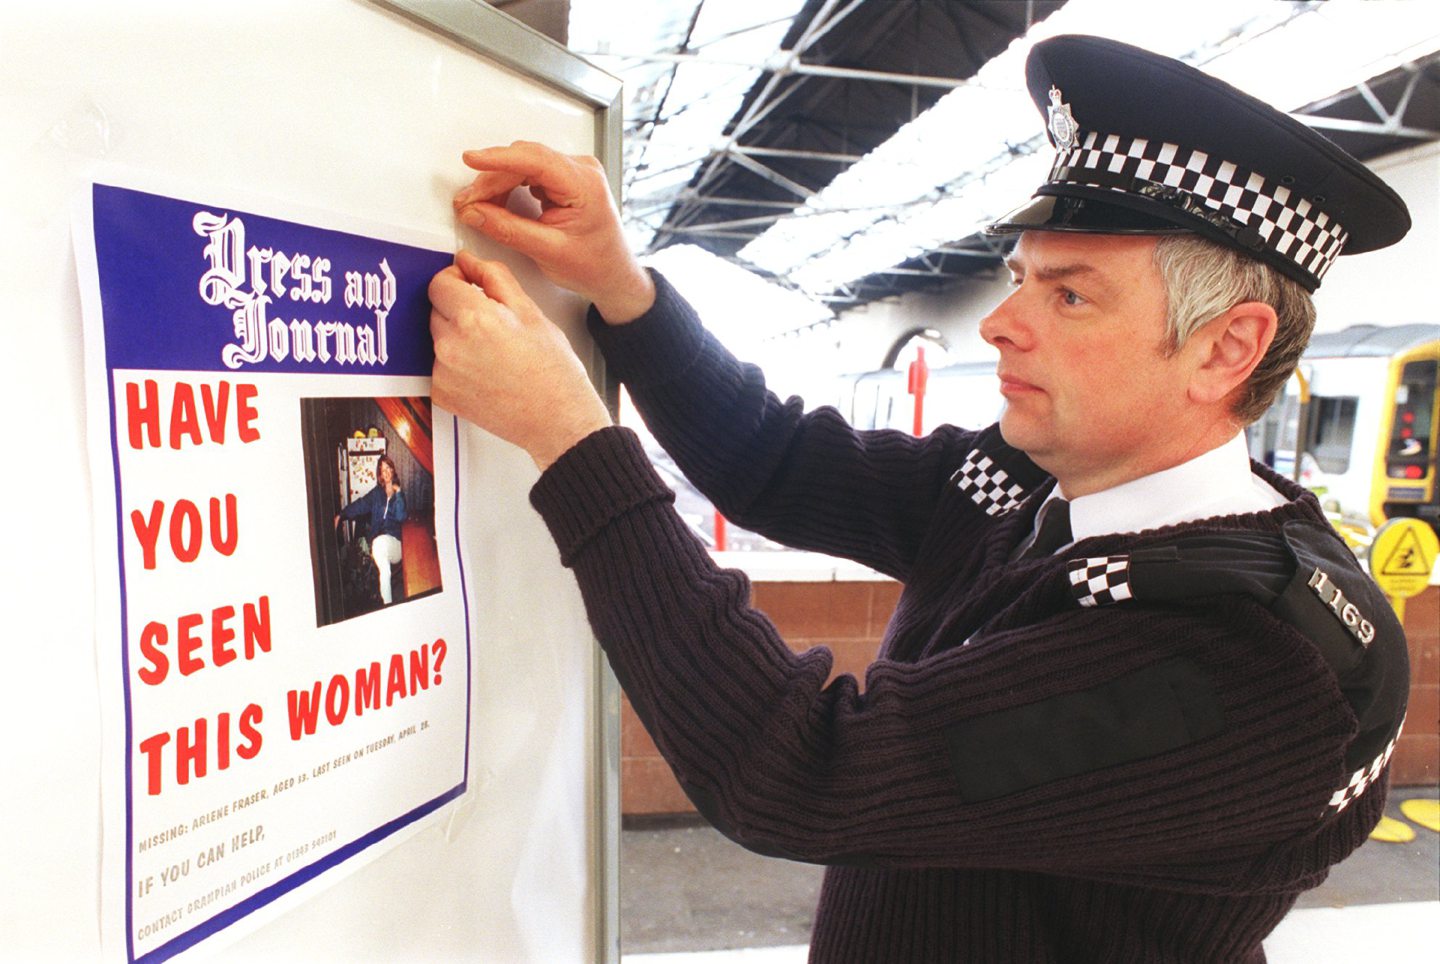 A British Transport Police officer putting up a missing poster for Arlene Fraser